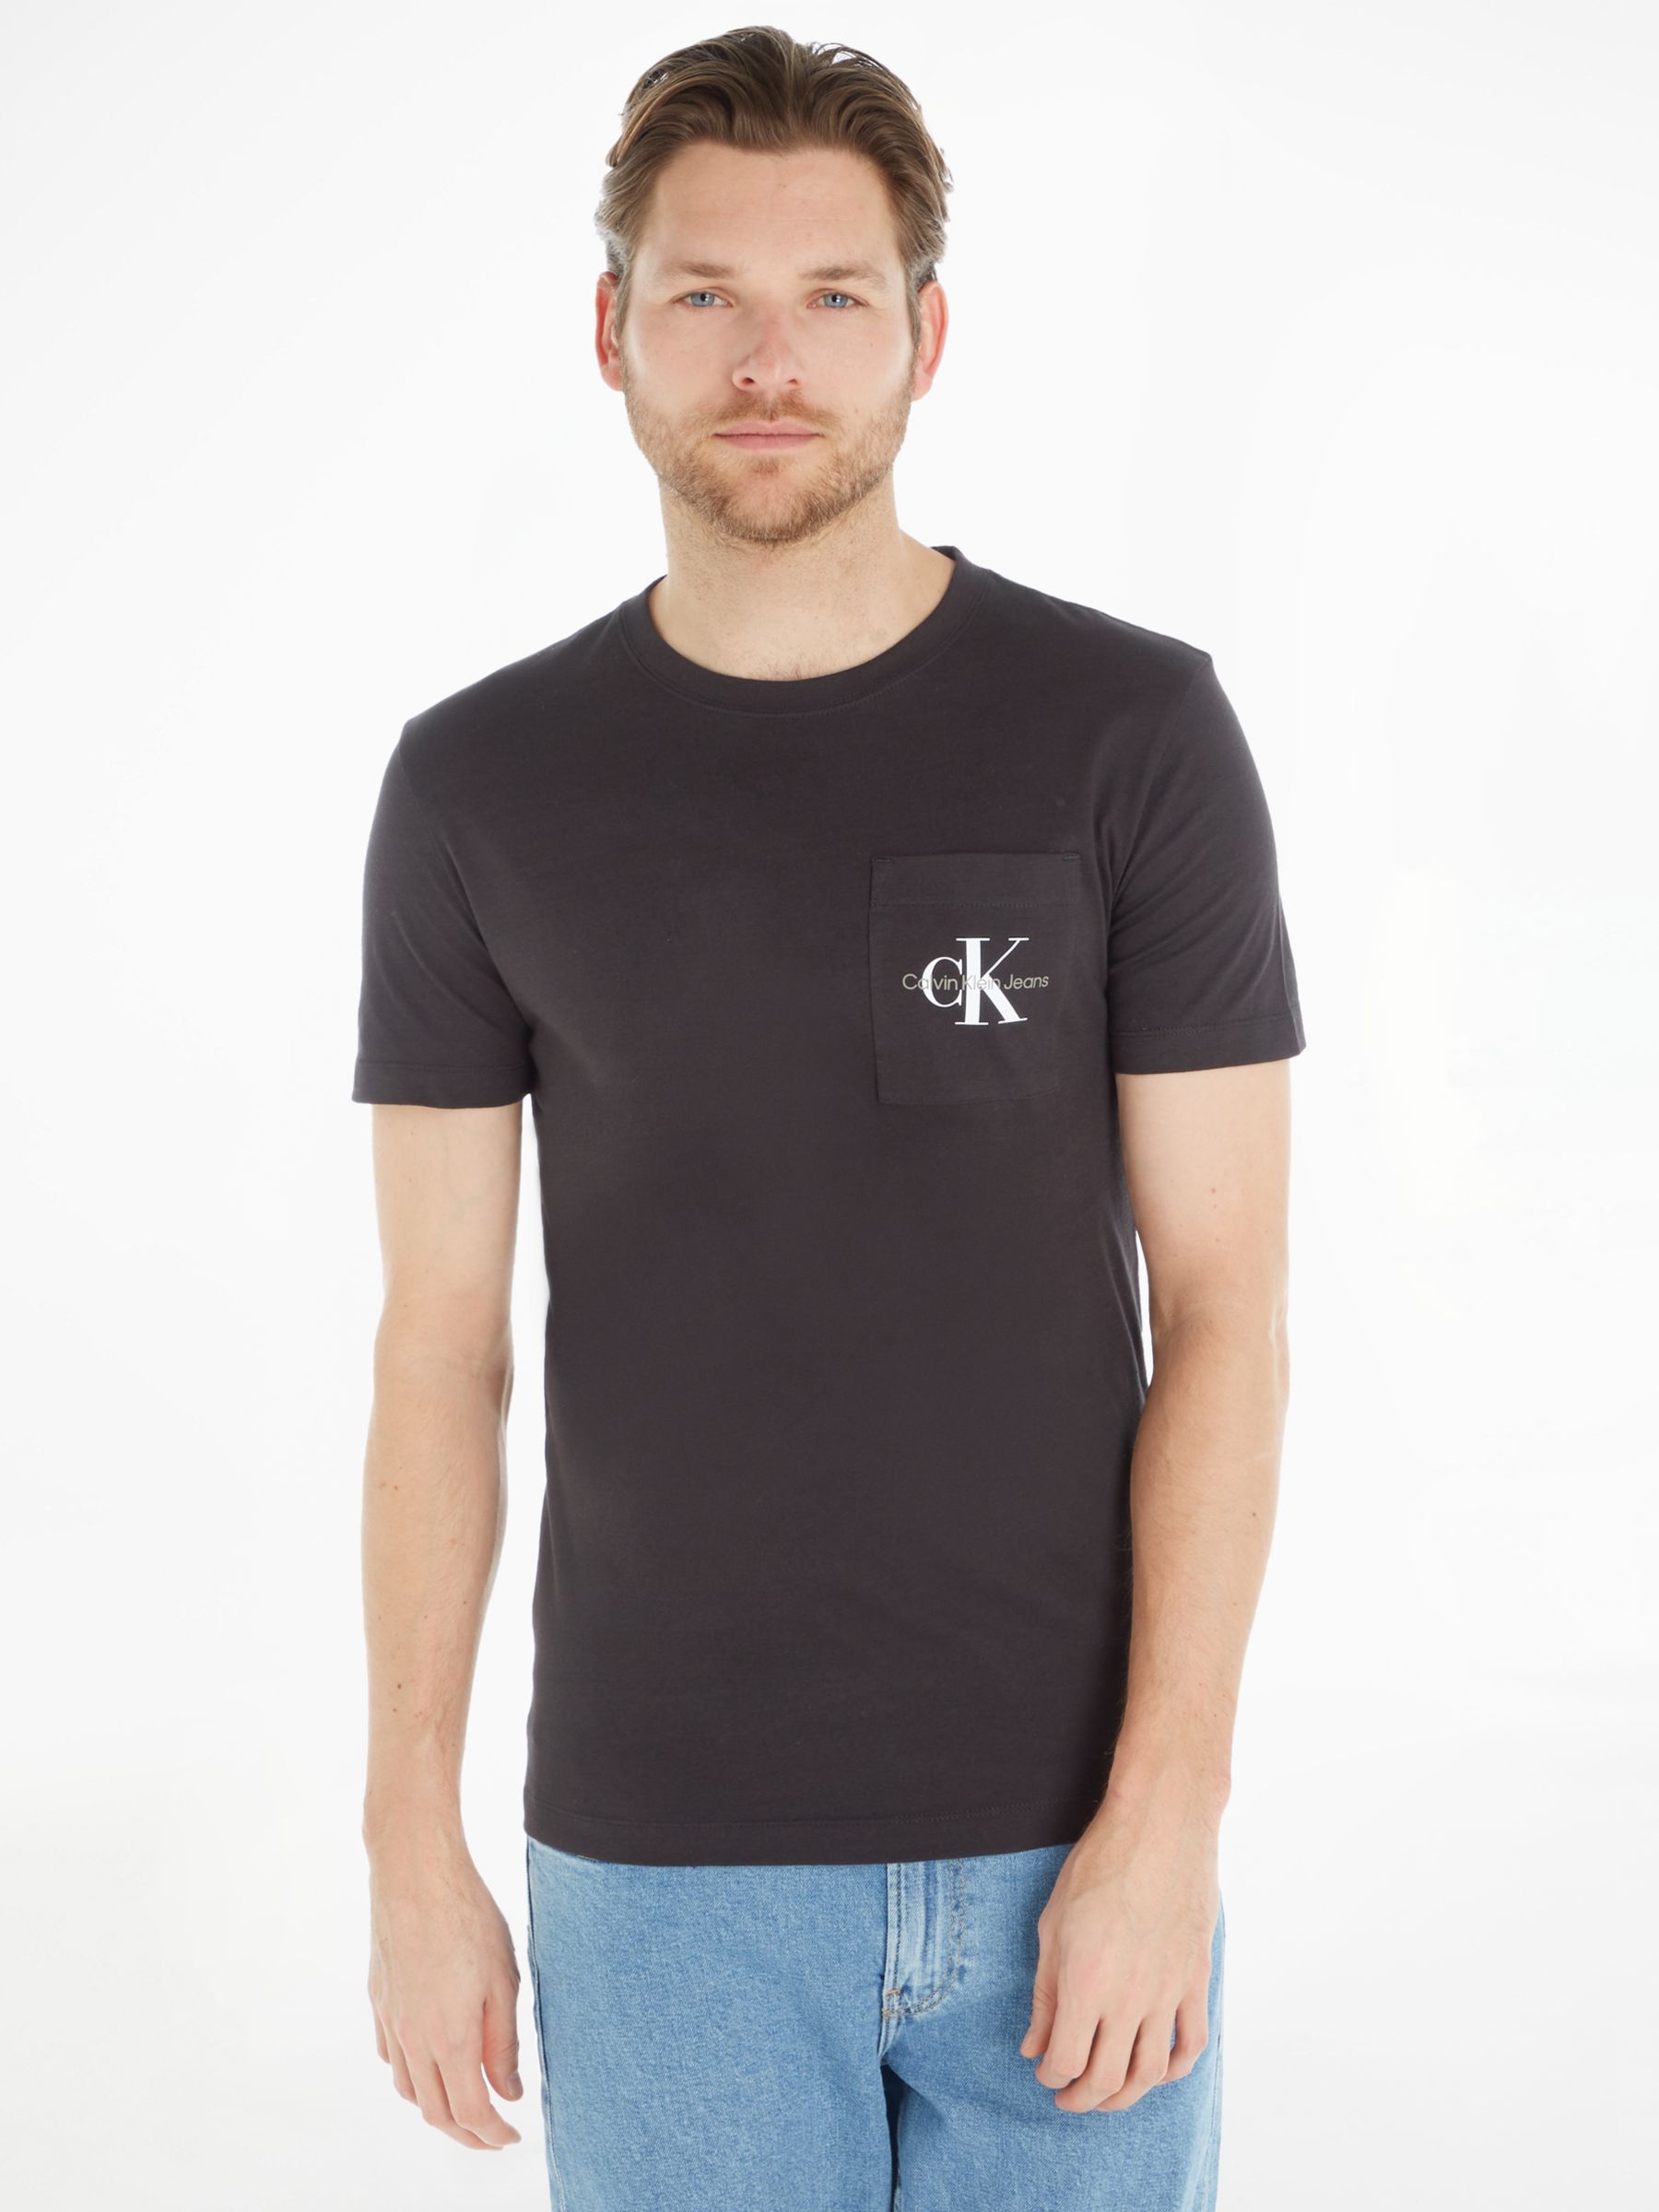 Calvin Klein Monogram Logo T-Shirt, Bright White at John Lewis & Partners